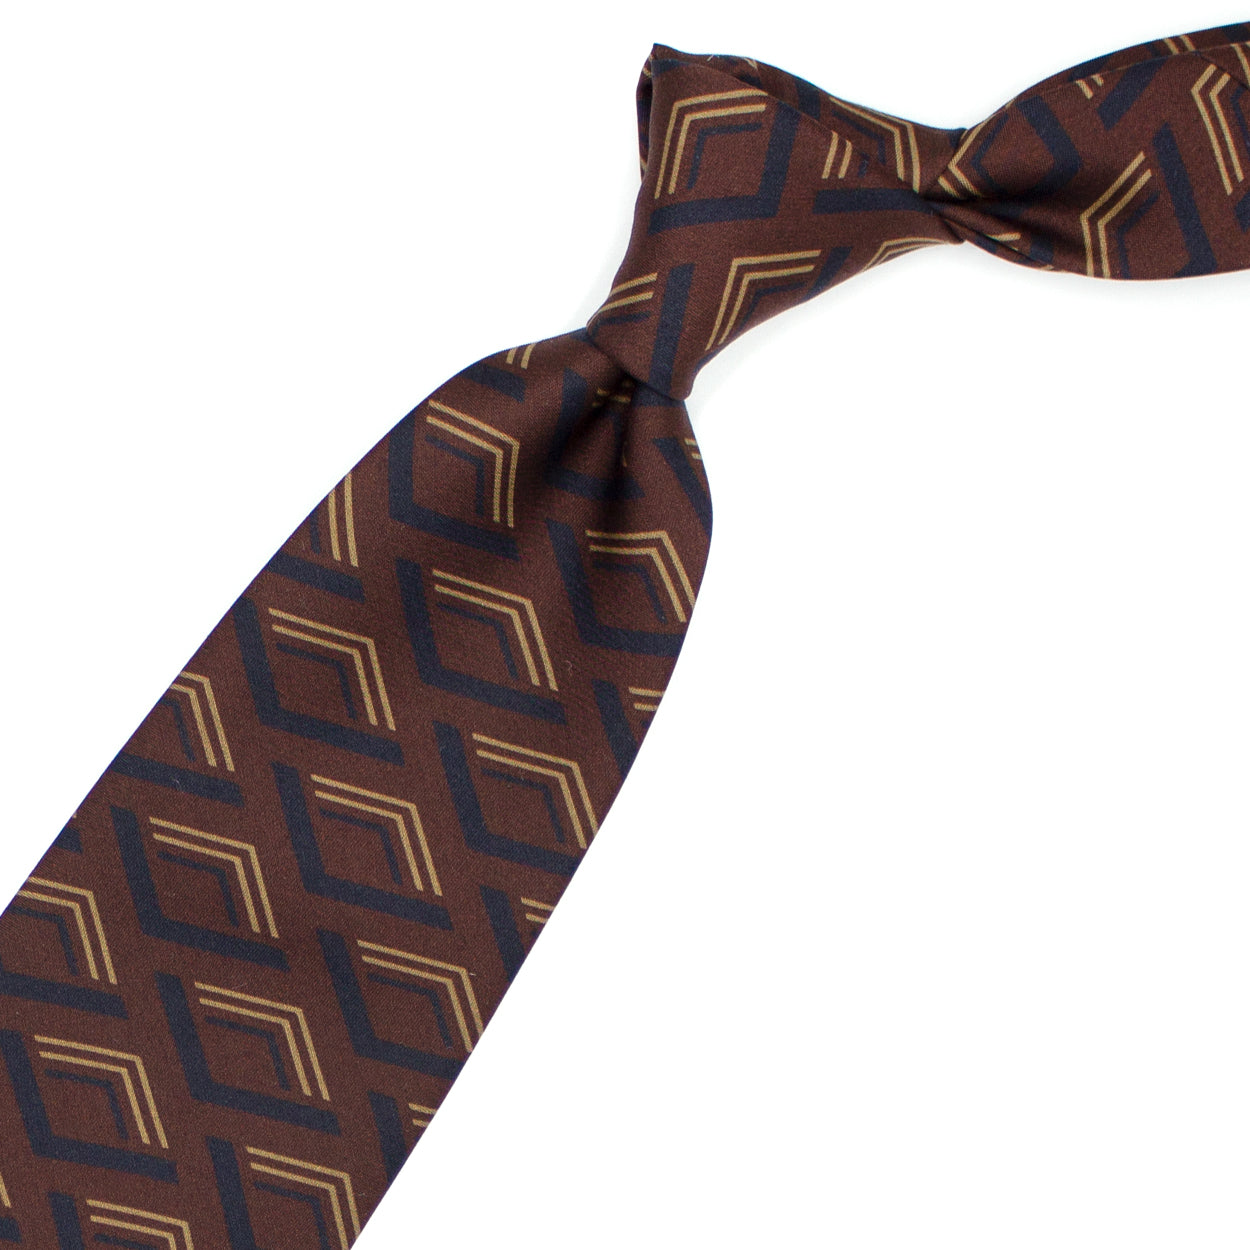 Cravatta marrone con pattern geometrico blu e senape